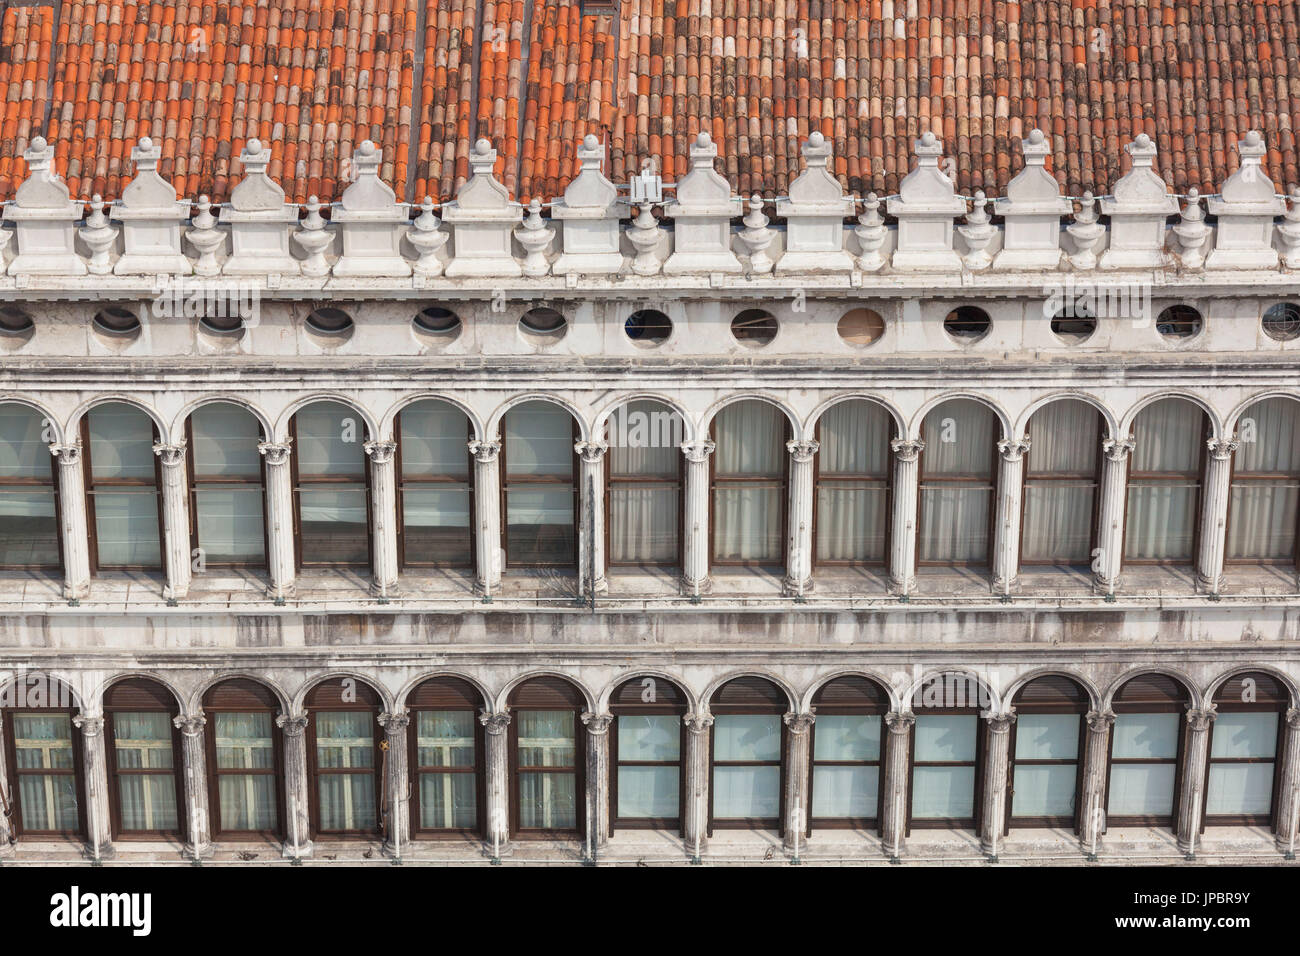 Europa, Italien, Veneto, Venedig. Der Doge Palast - Palazzo Ducale - Details der gotischen Architektur Stockfoto